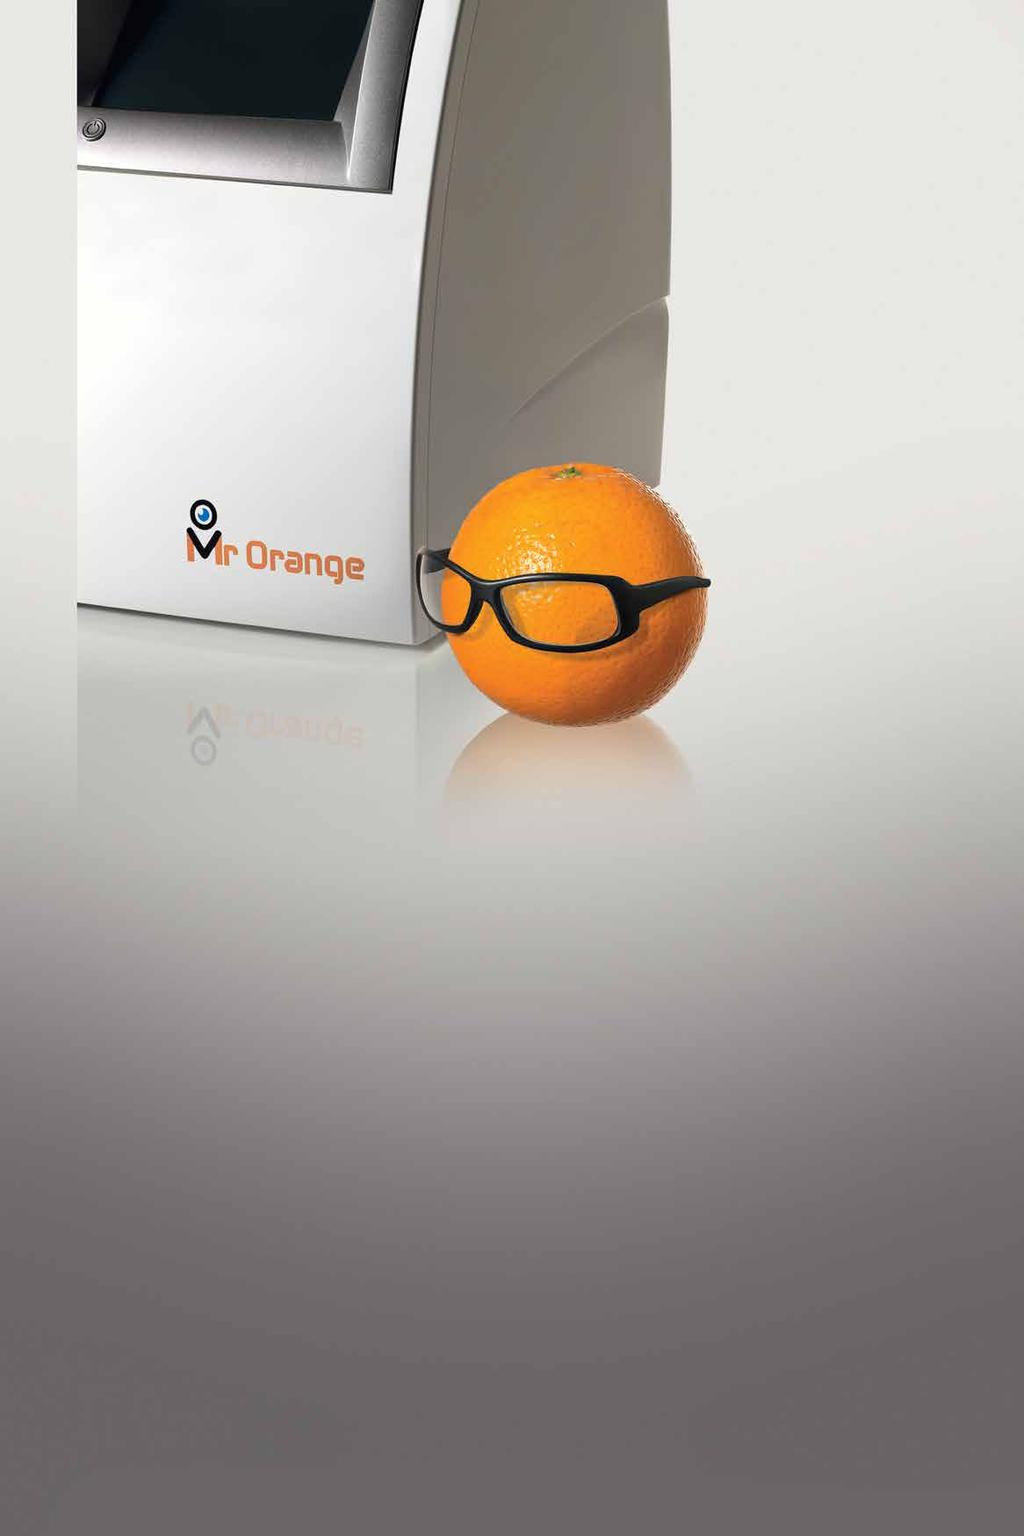 Mr Orange Concebido